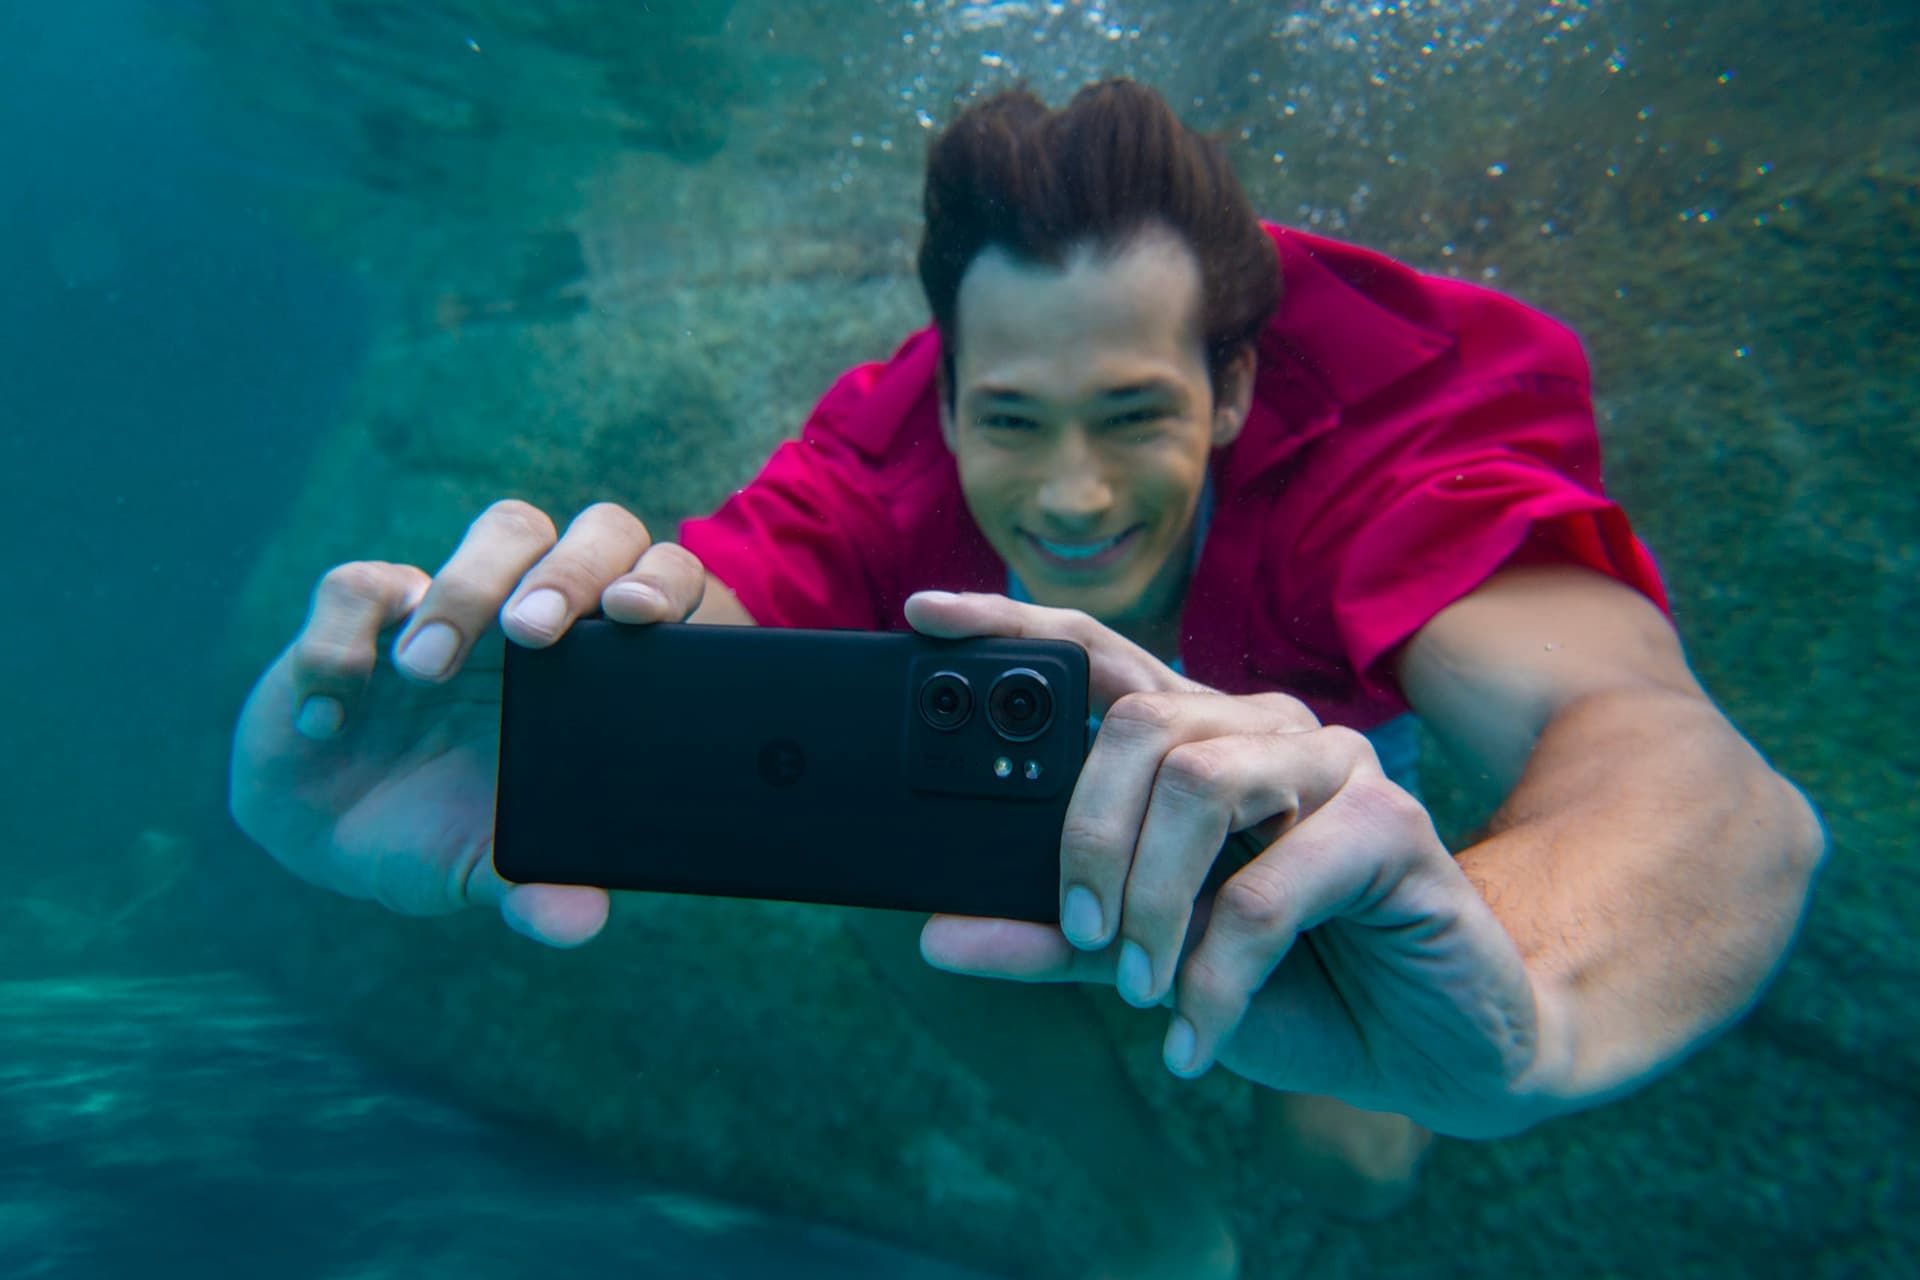 مرد جوان لباس قرمز زیر آب با موتورولا اج ۴۰ / Motorola Edge 40